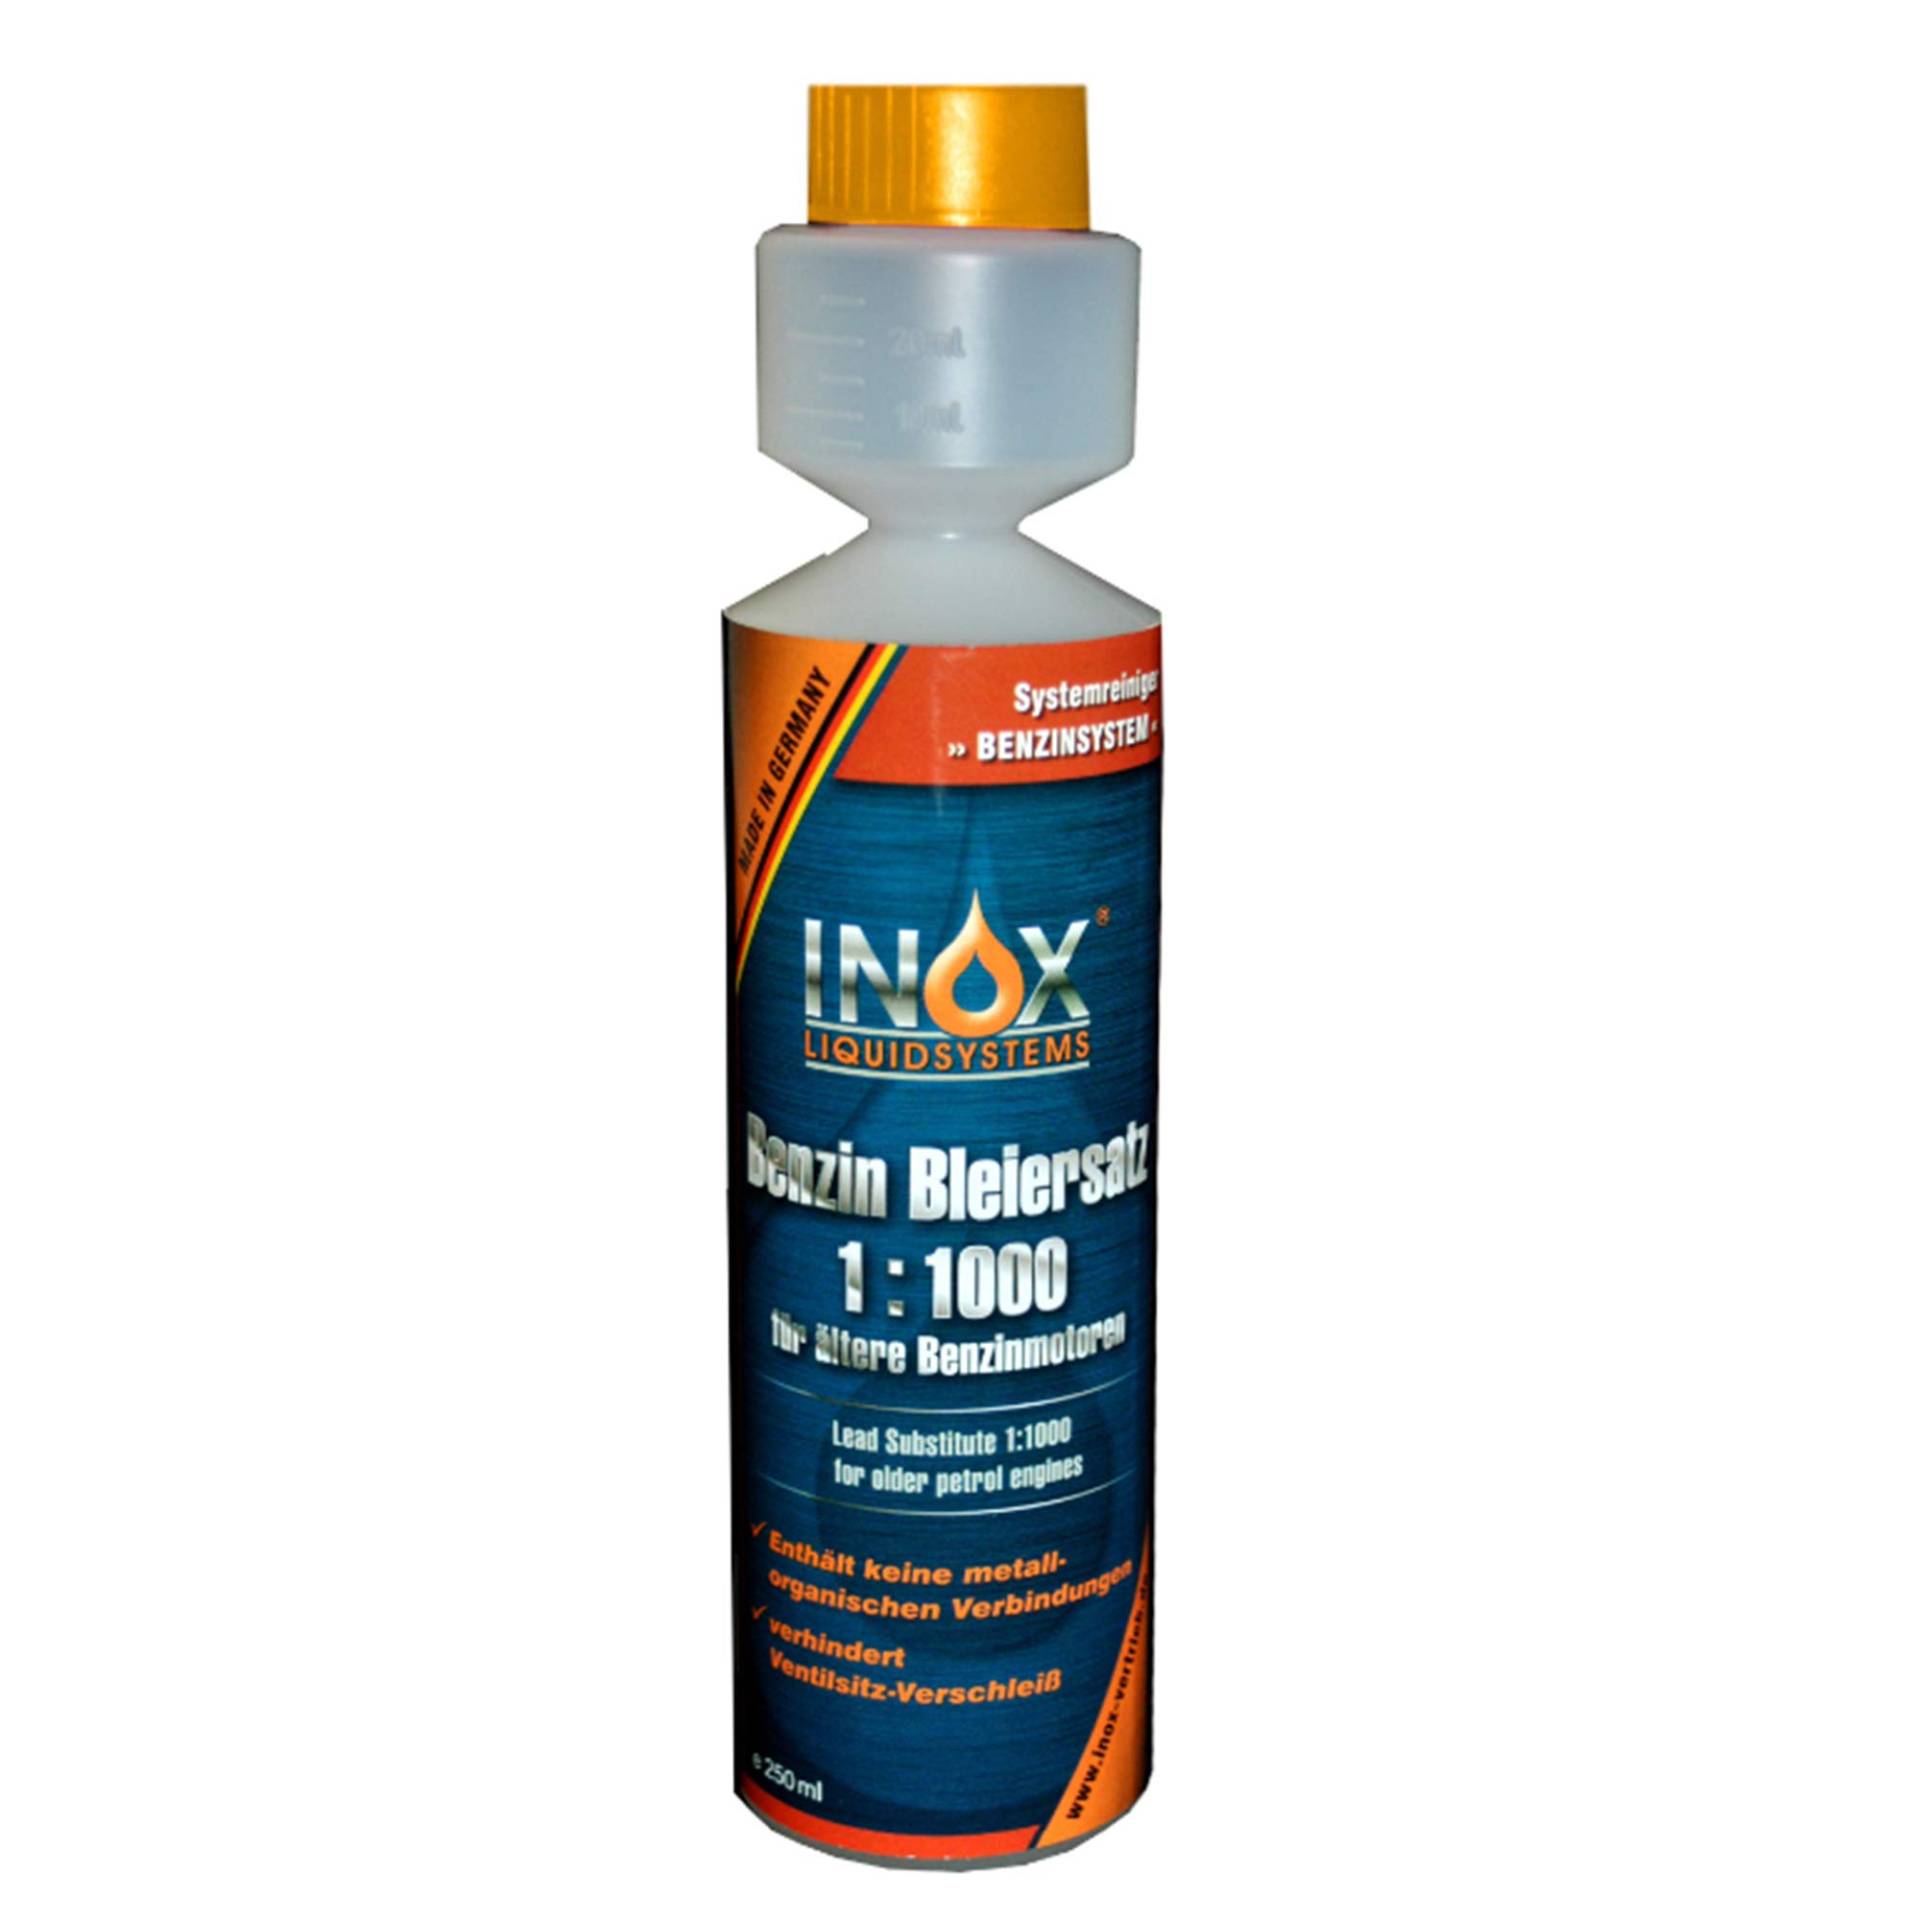 INOX® Benzin Blei Ersatz 1:1000, 250 ml - Kraftstoffadditiv für ältere Benzinmotoren gegen Leistungsabfall und Motorschäden von INOX-LIQUIDSYSTEMS